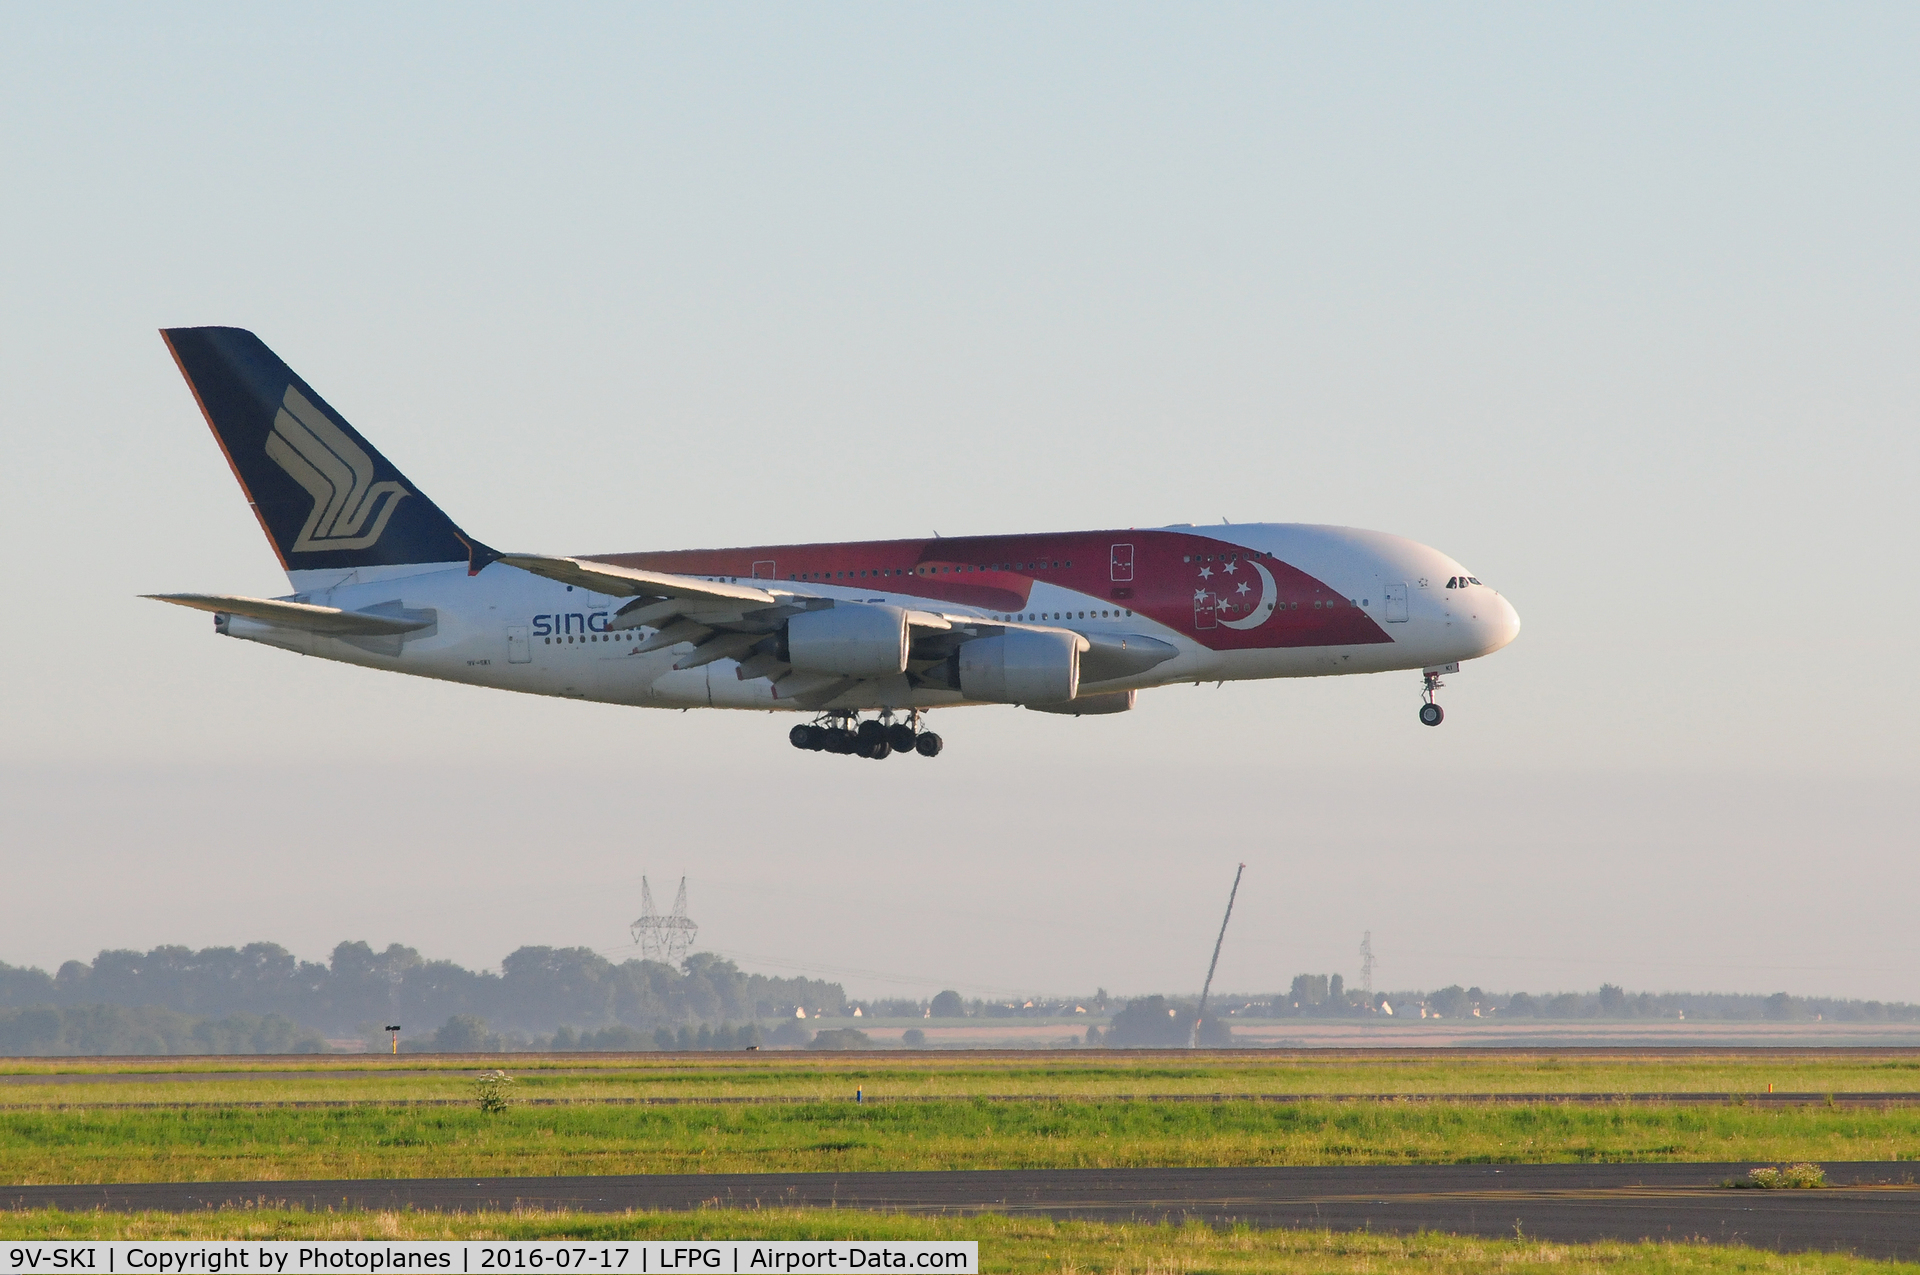 9V-SKI, 2009 Airbus A380-841 C/N 034, CDG landing